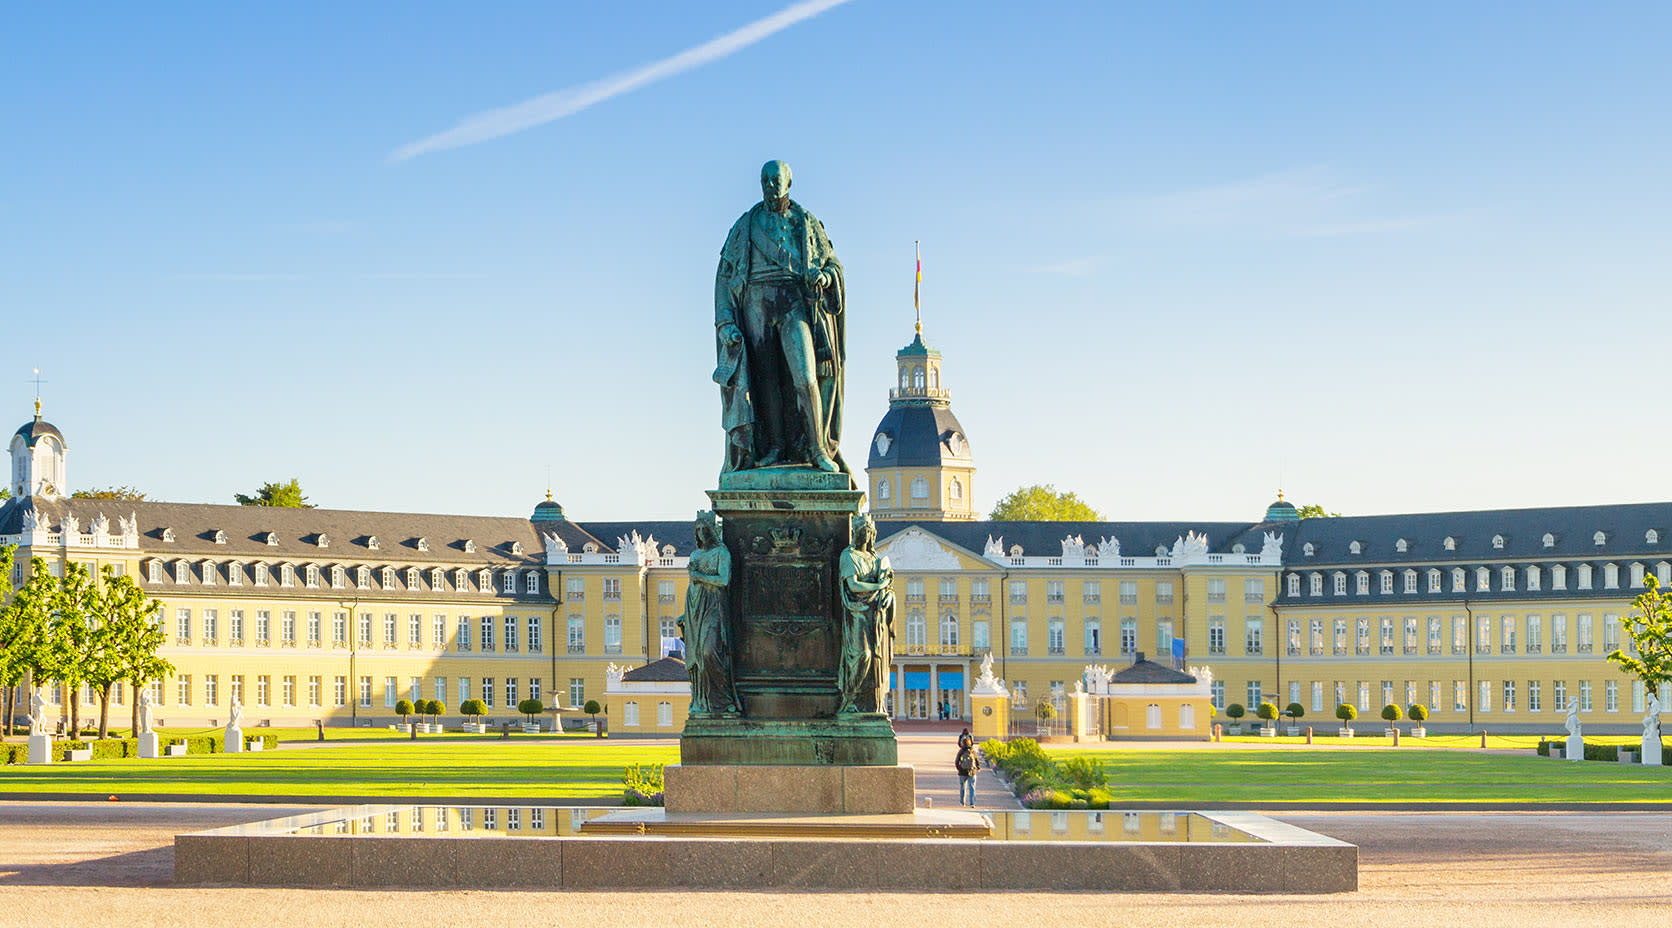 Ansicht des Schlosses in Karlsruhe mit Statue im Vordergrund